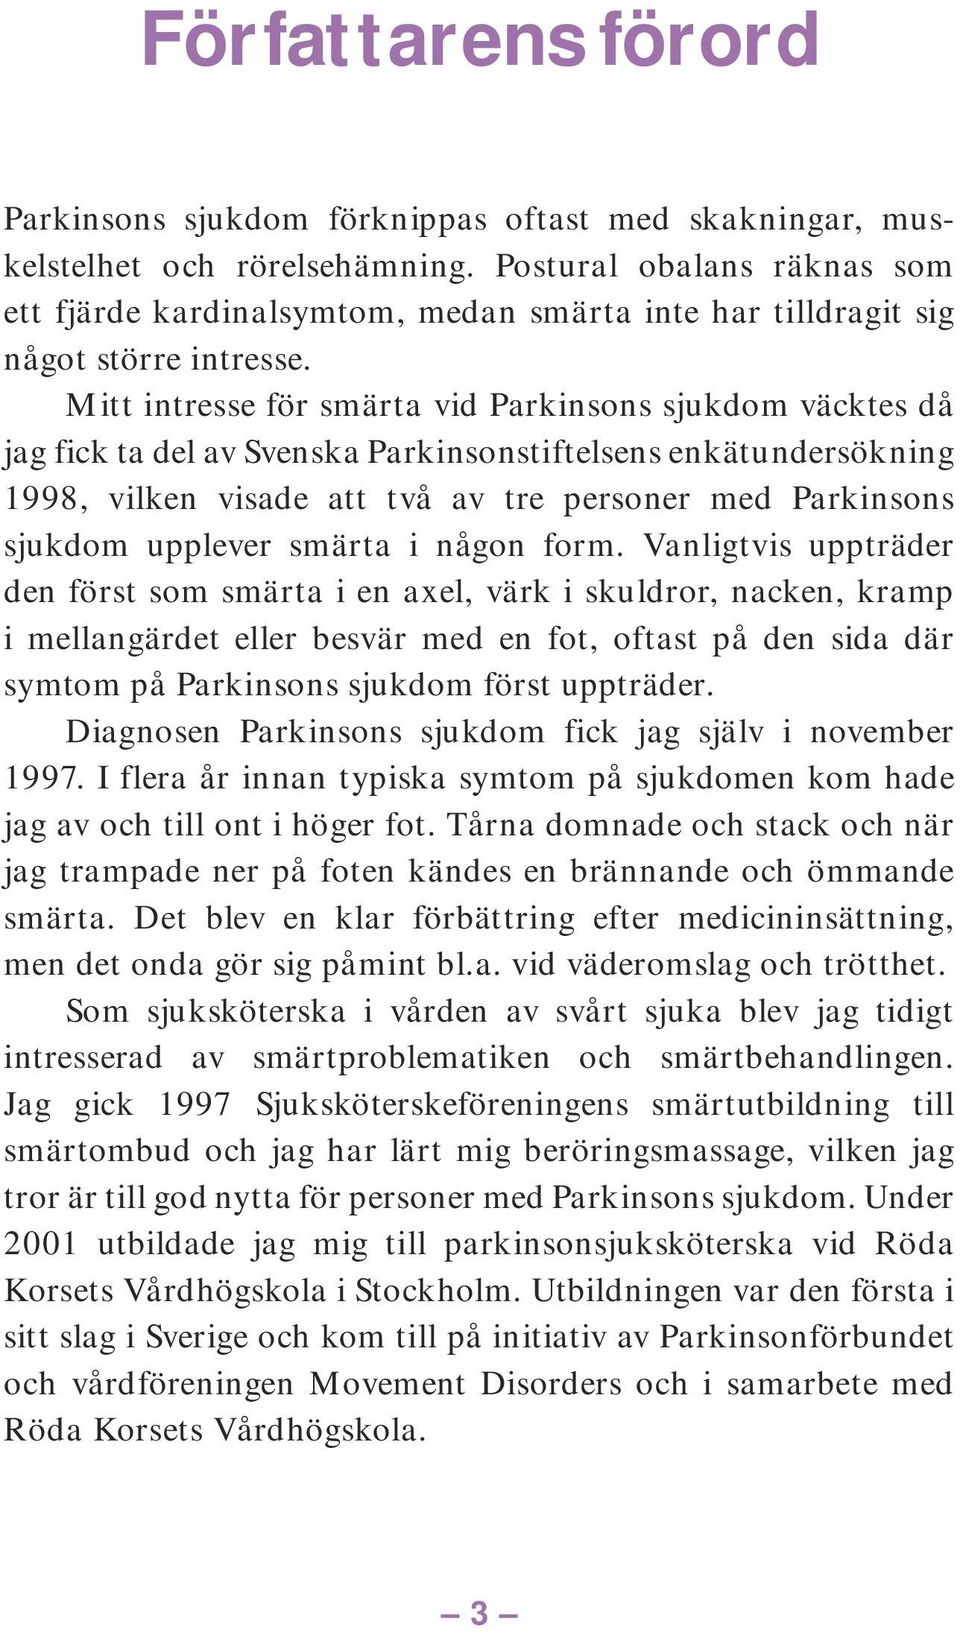 Mitt intresse för smärta vid Parkinsons sjukdom väcktes då jag fick ta del av Svenska Parkinsonstiftelsens enkätundersökning 1998, vilken visade att två av tre personer med Parkinsons sjukdom